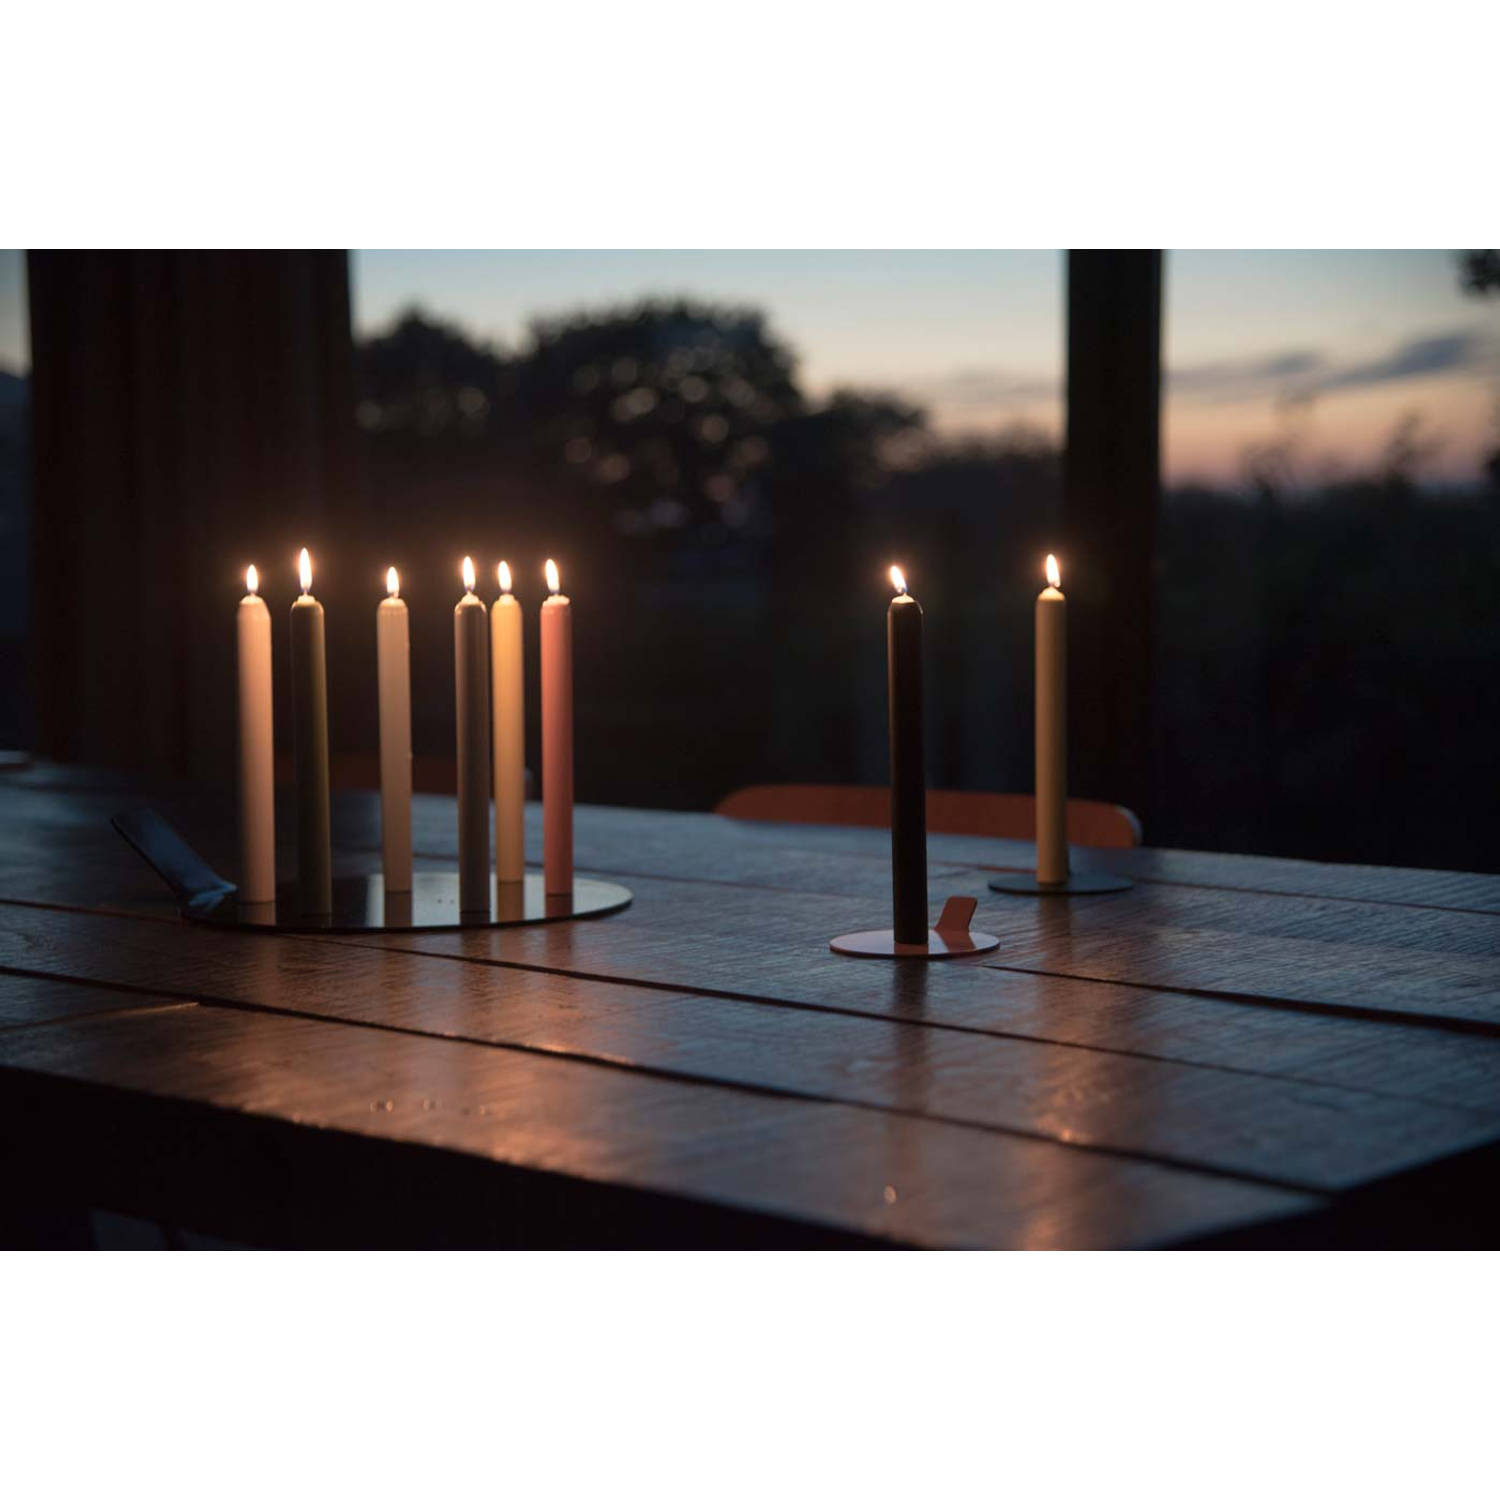 voor mij Stun pijn Lunedot unieke kaarsenstandaard inclusief 3 kaarsen – kaarsenhouder –  kaarsen kandelaar – zwart | Blokker